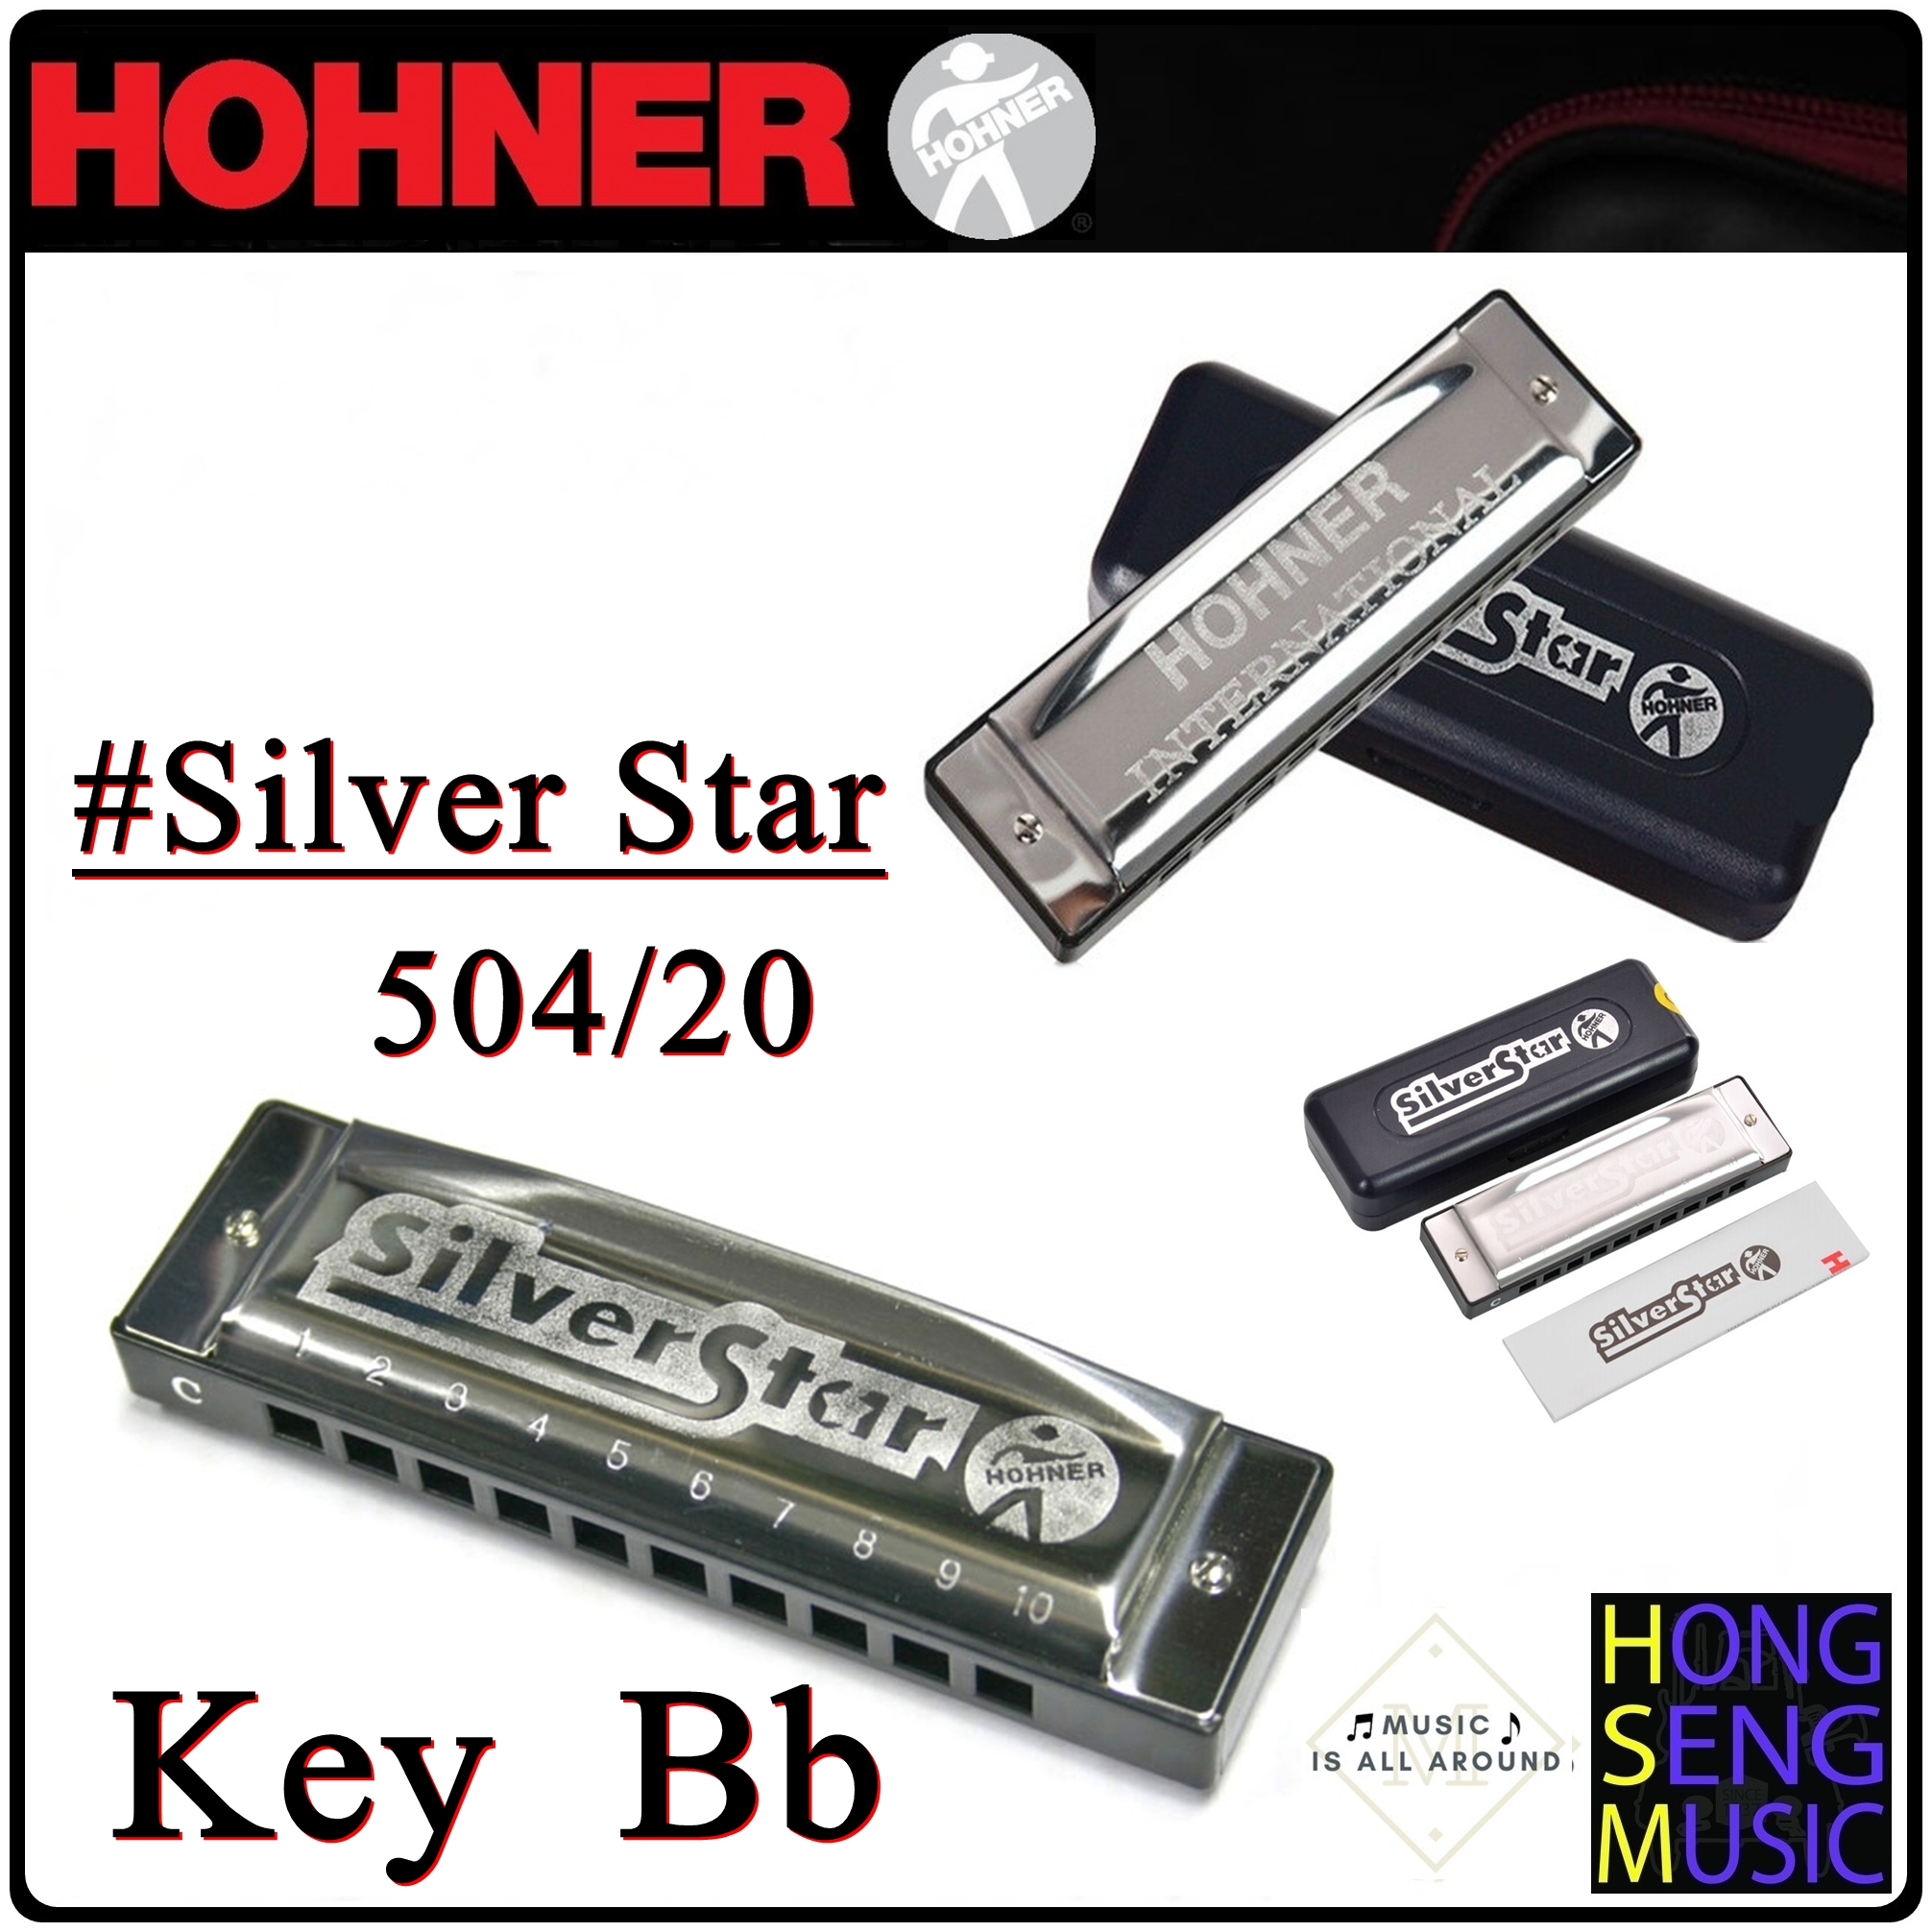 ฮาร์โมนิก้า (เม้าท์ออร์แกน) Hohner รุ่น Silver Star Harmonica 504/20 Key Bb